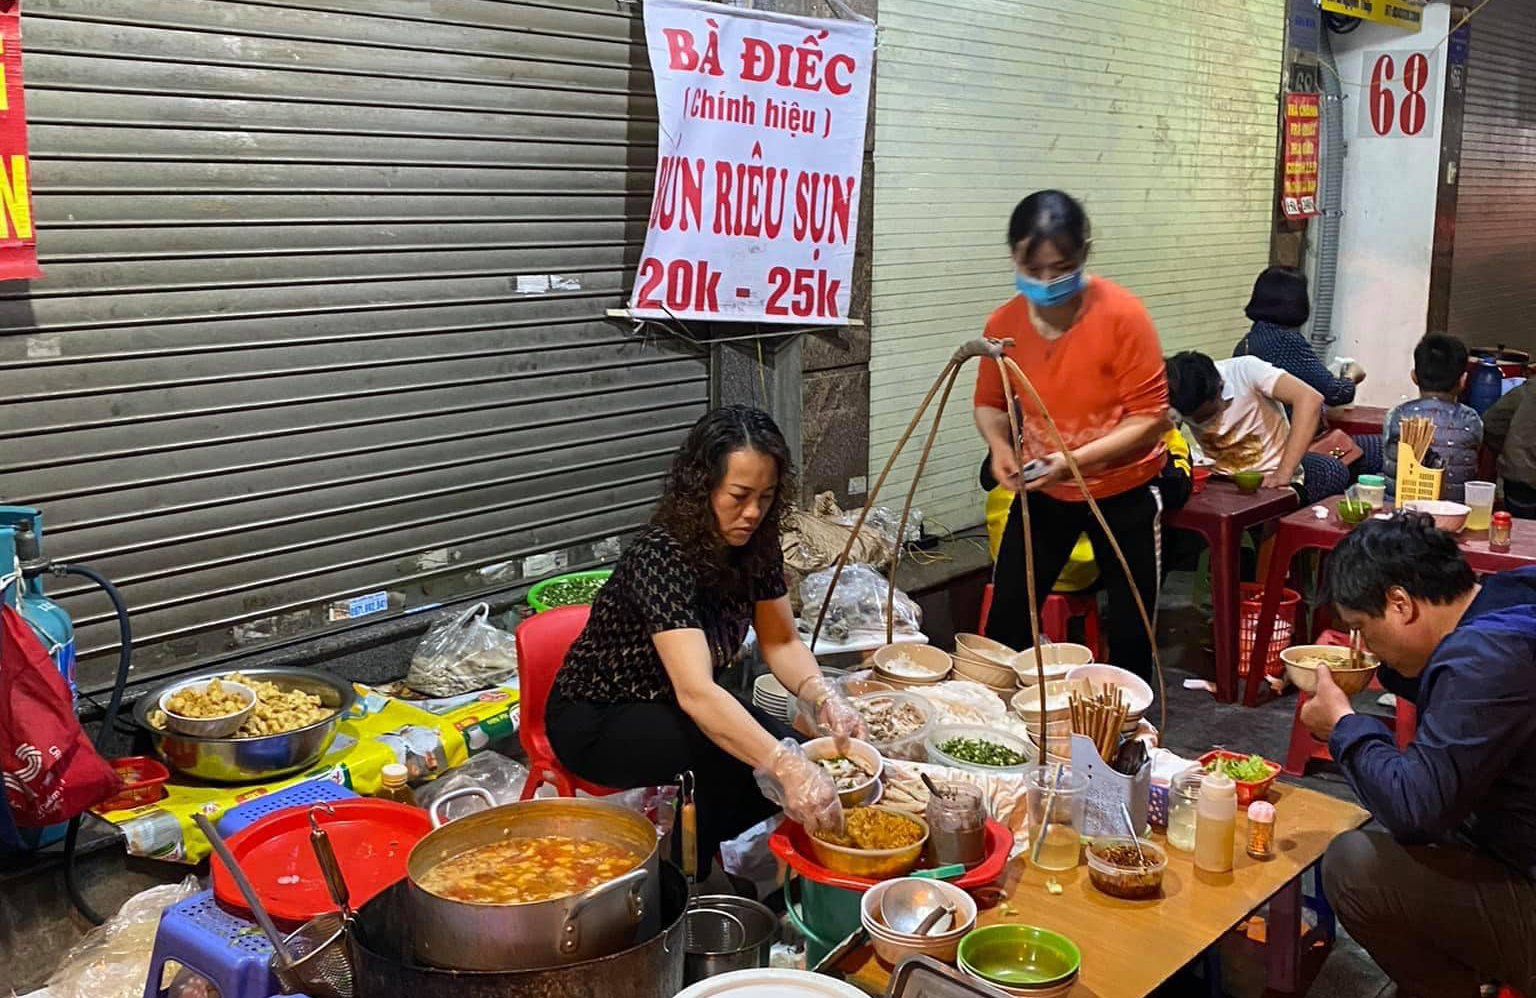 4 quán bún riêu cua bán tối cho những người hay đói đêm ở Hà Nội - Ảnh 3